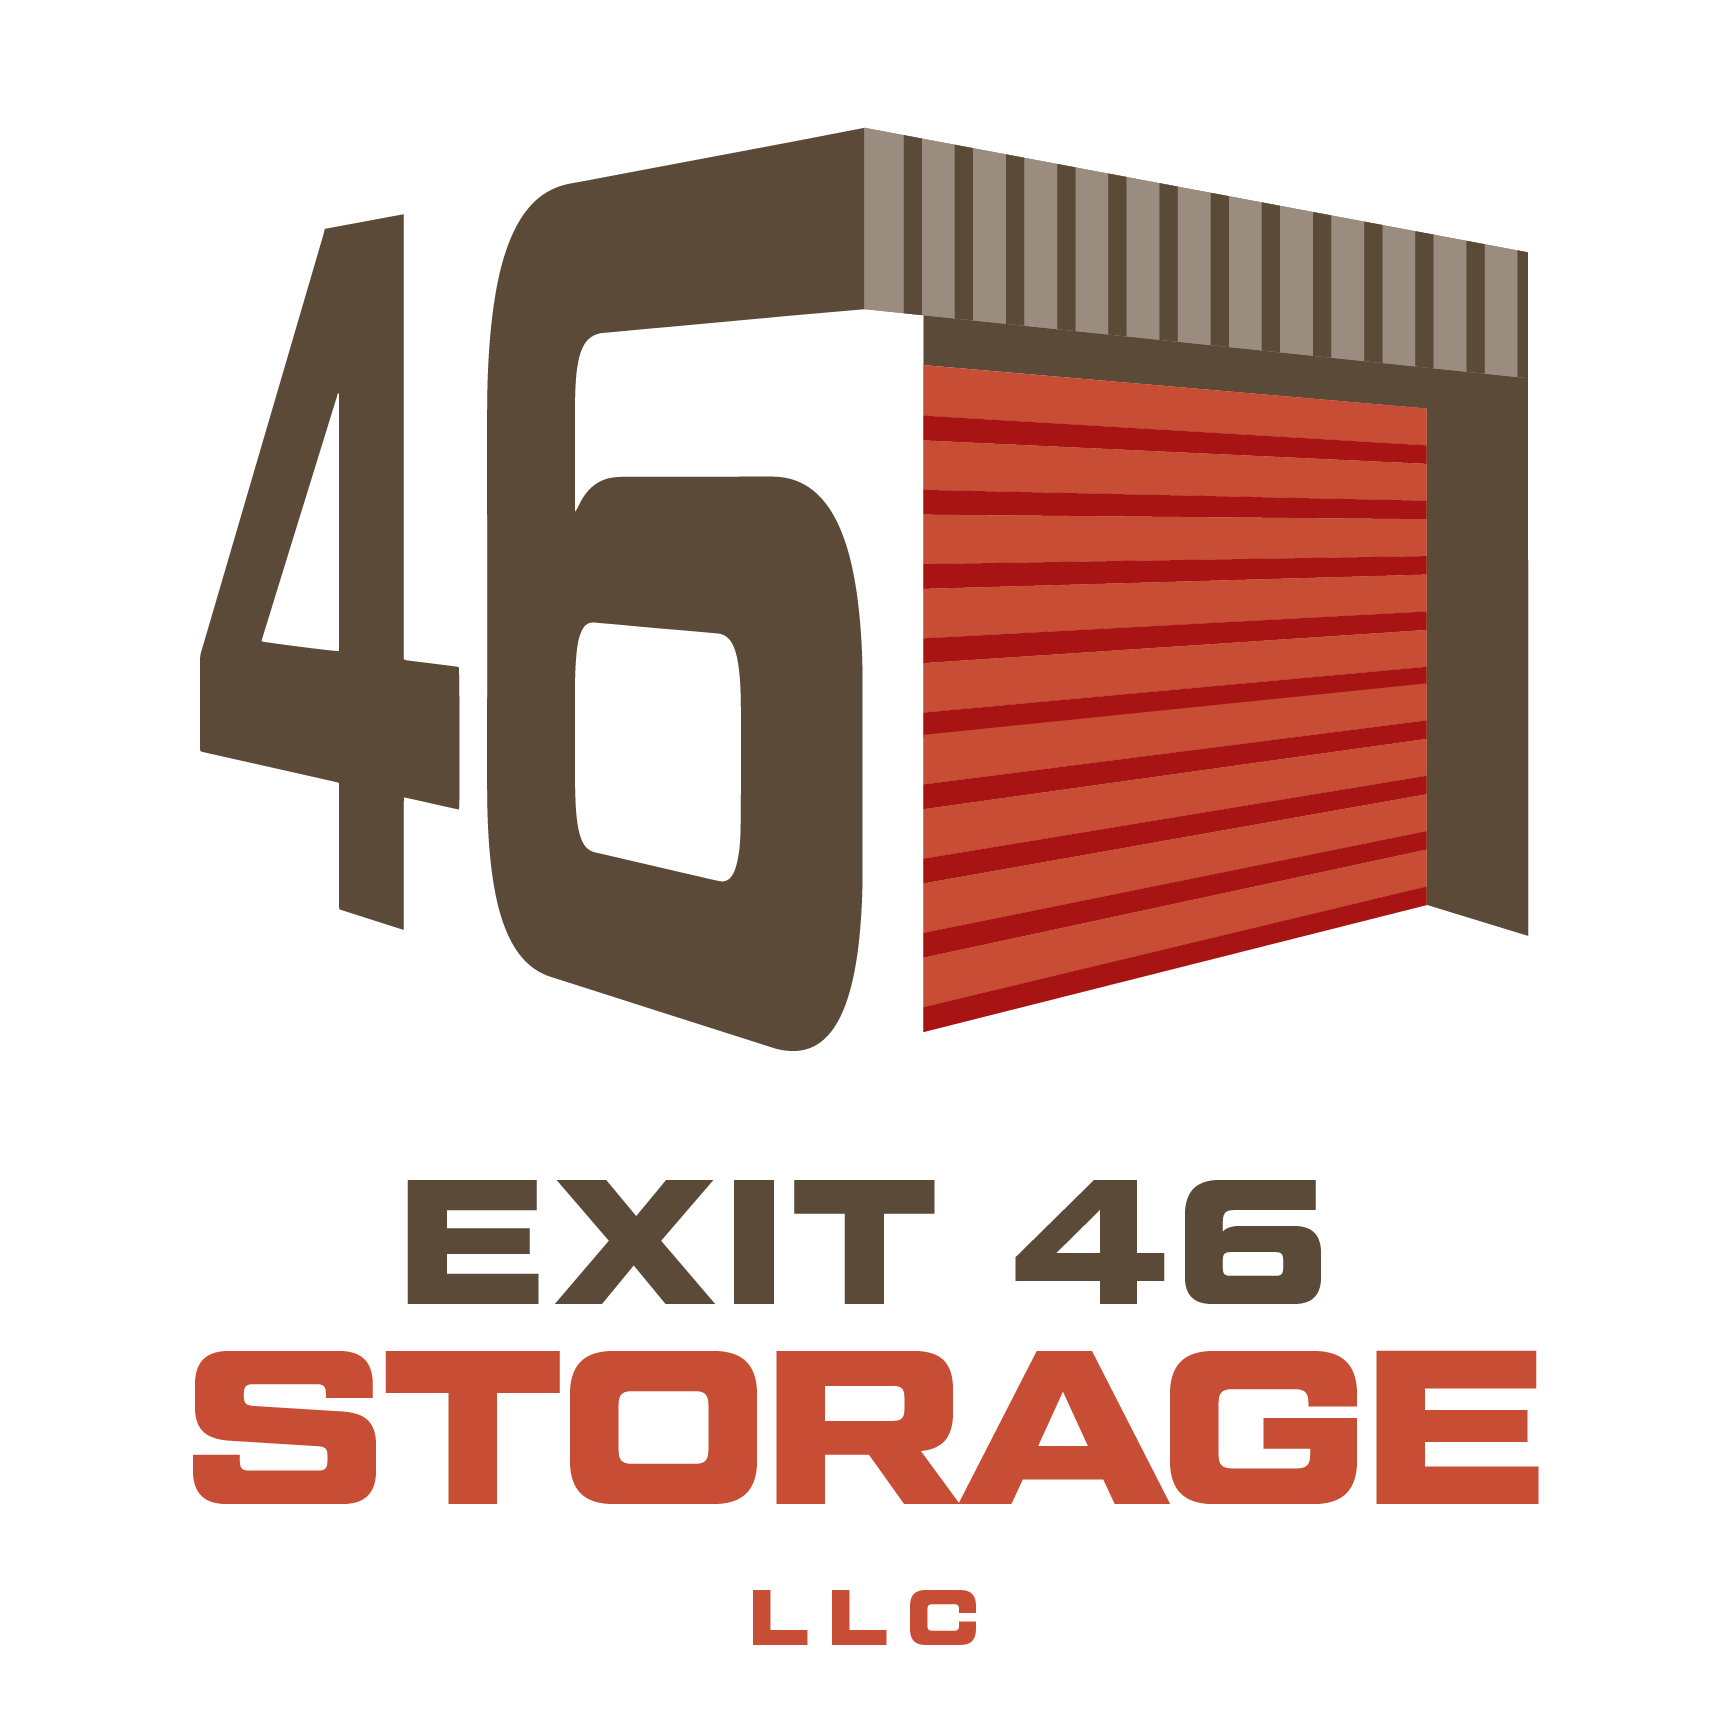 Exit 46 Storage